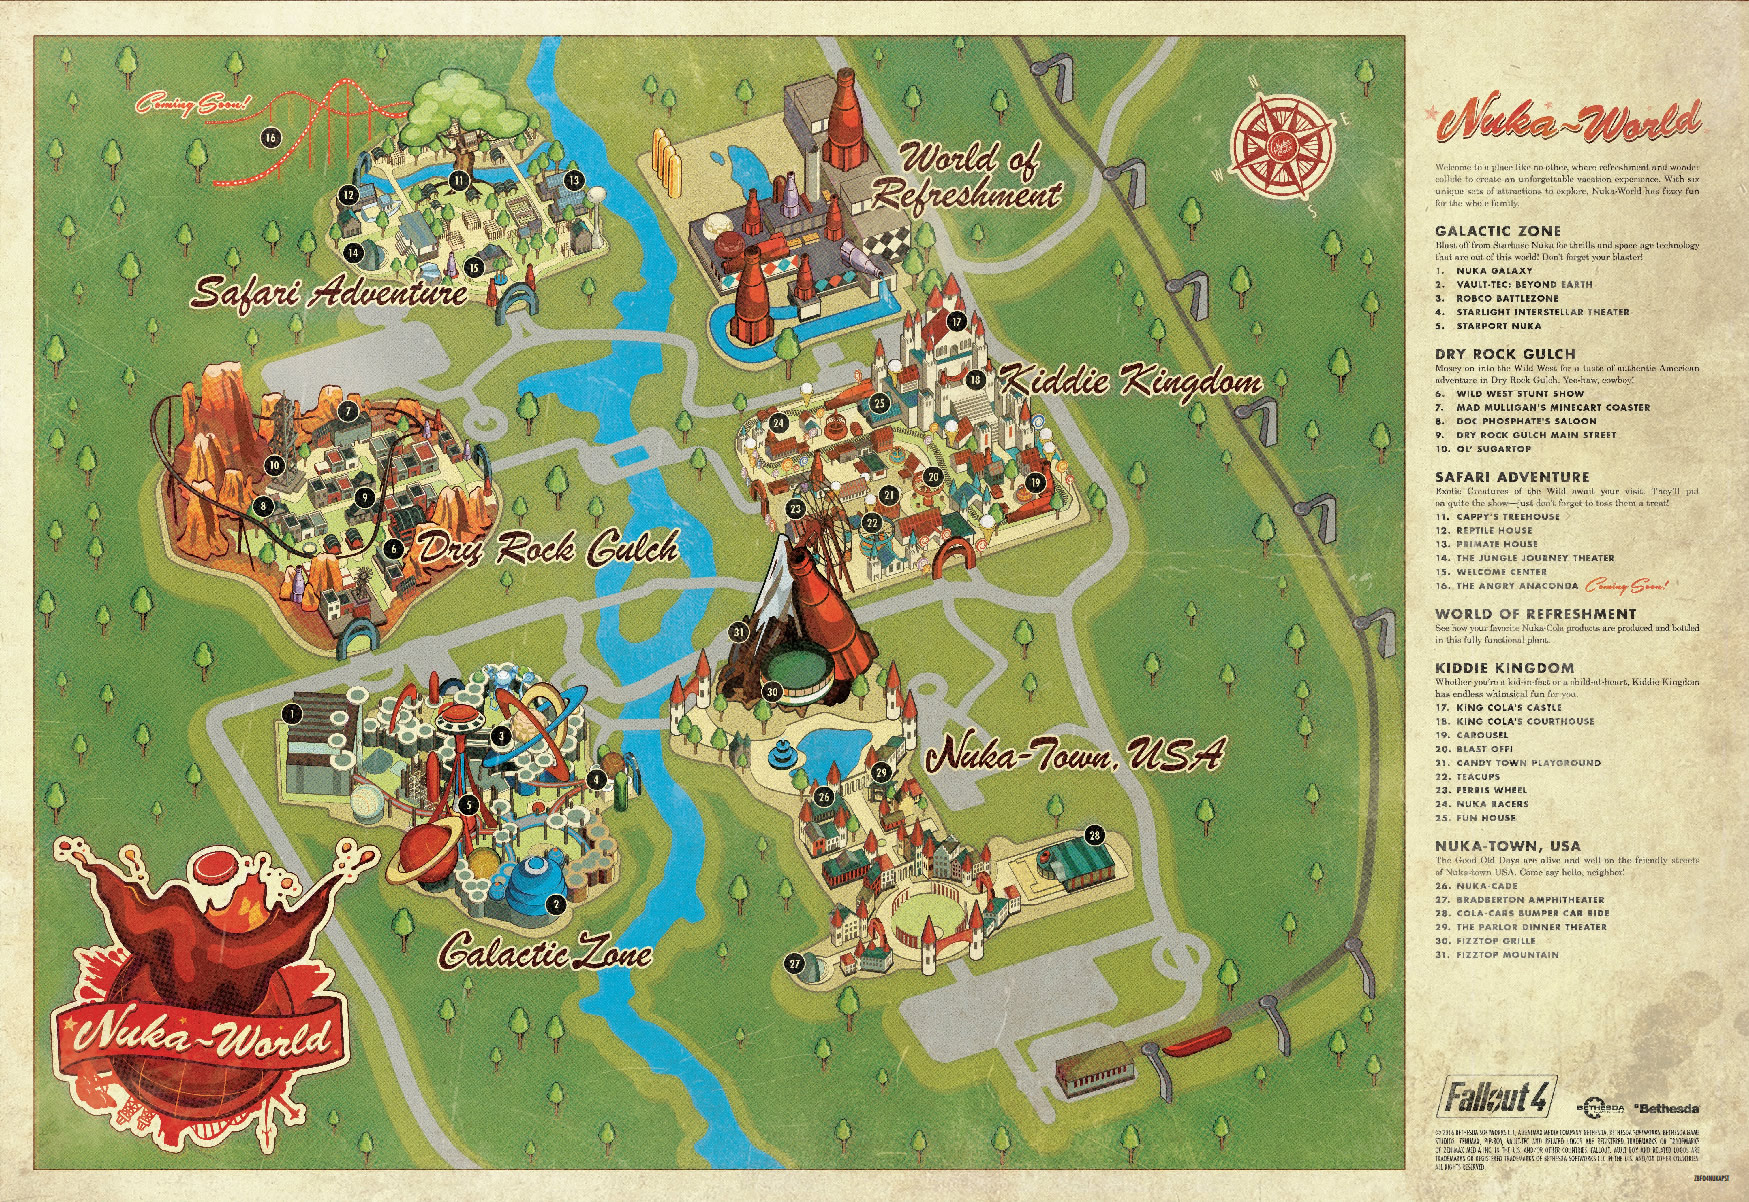 Fallout 4 Nuka World の舞台となるヌカワールド遊園地の案内図が公開 Doope